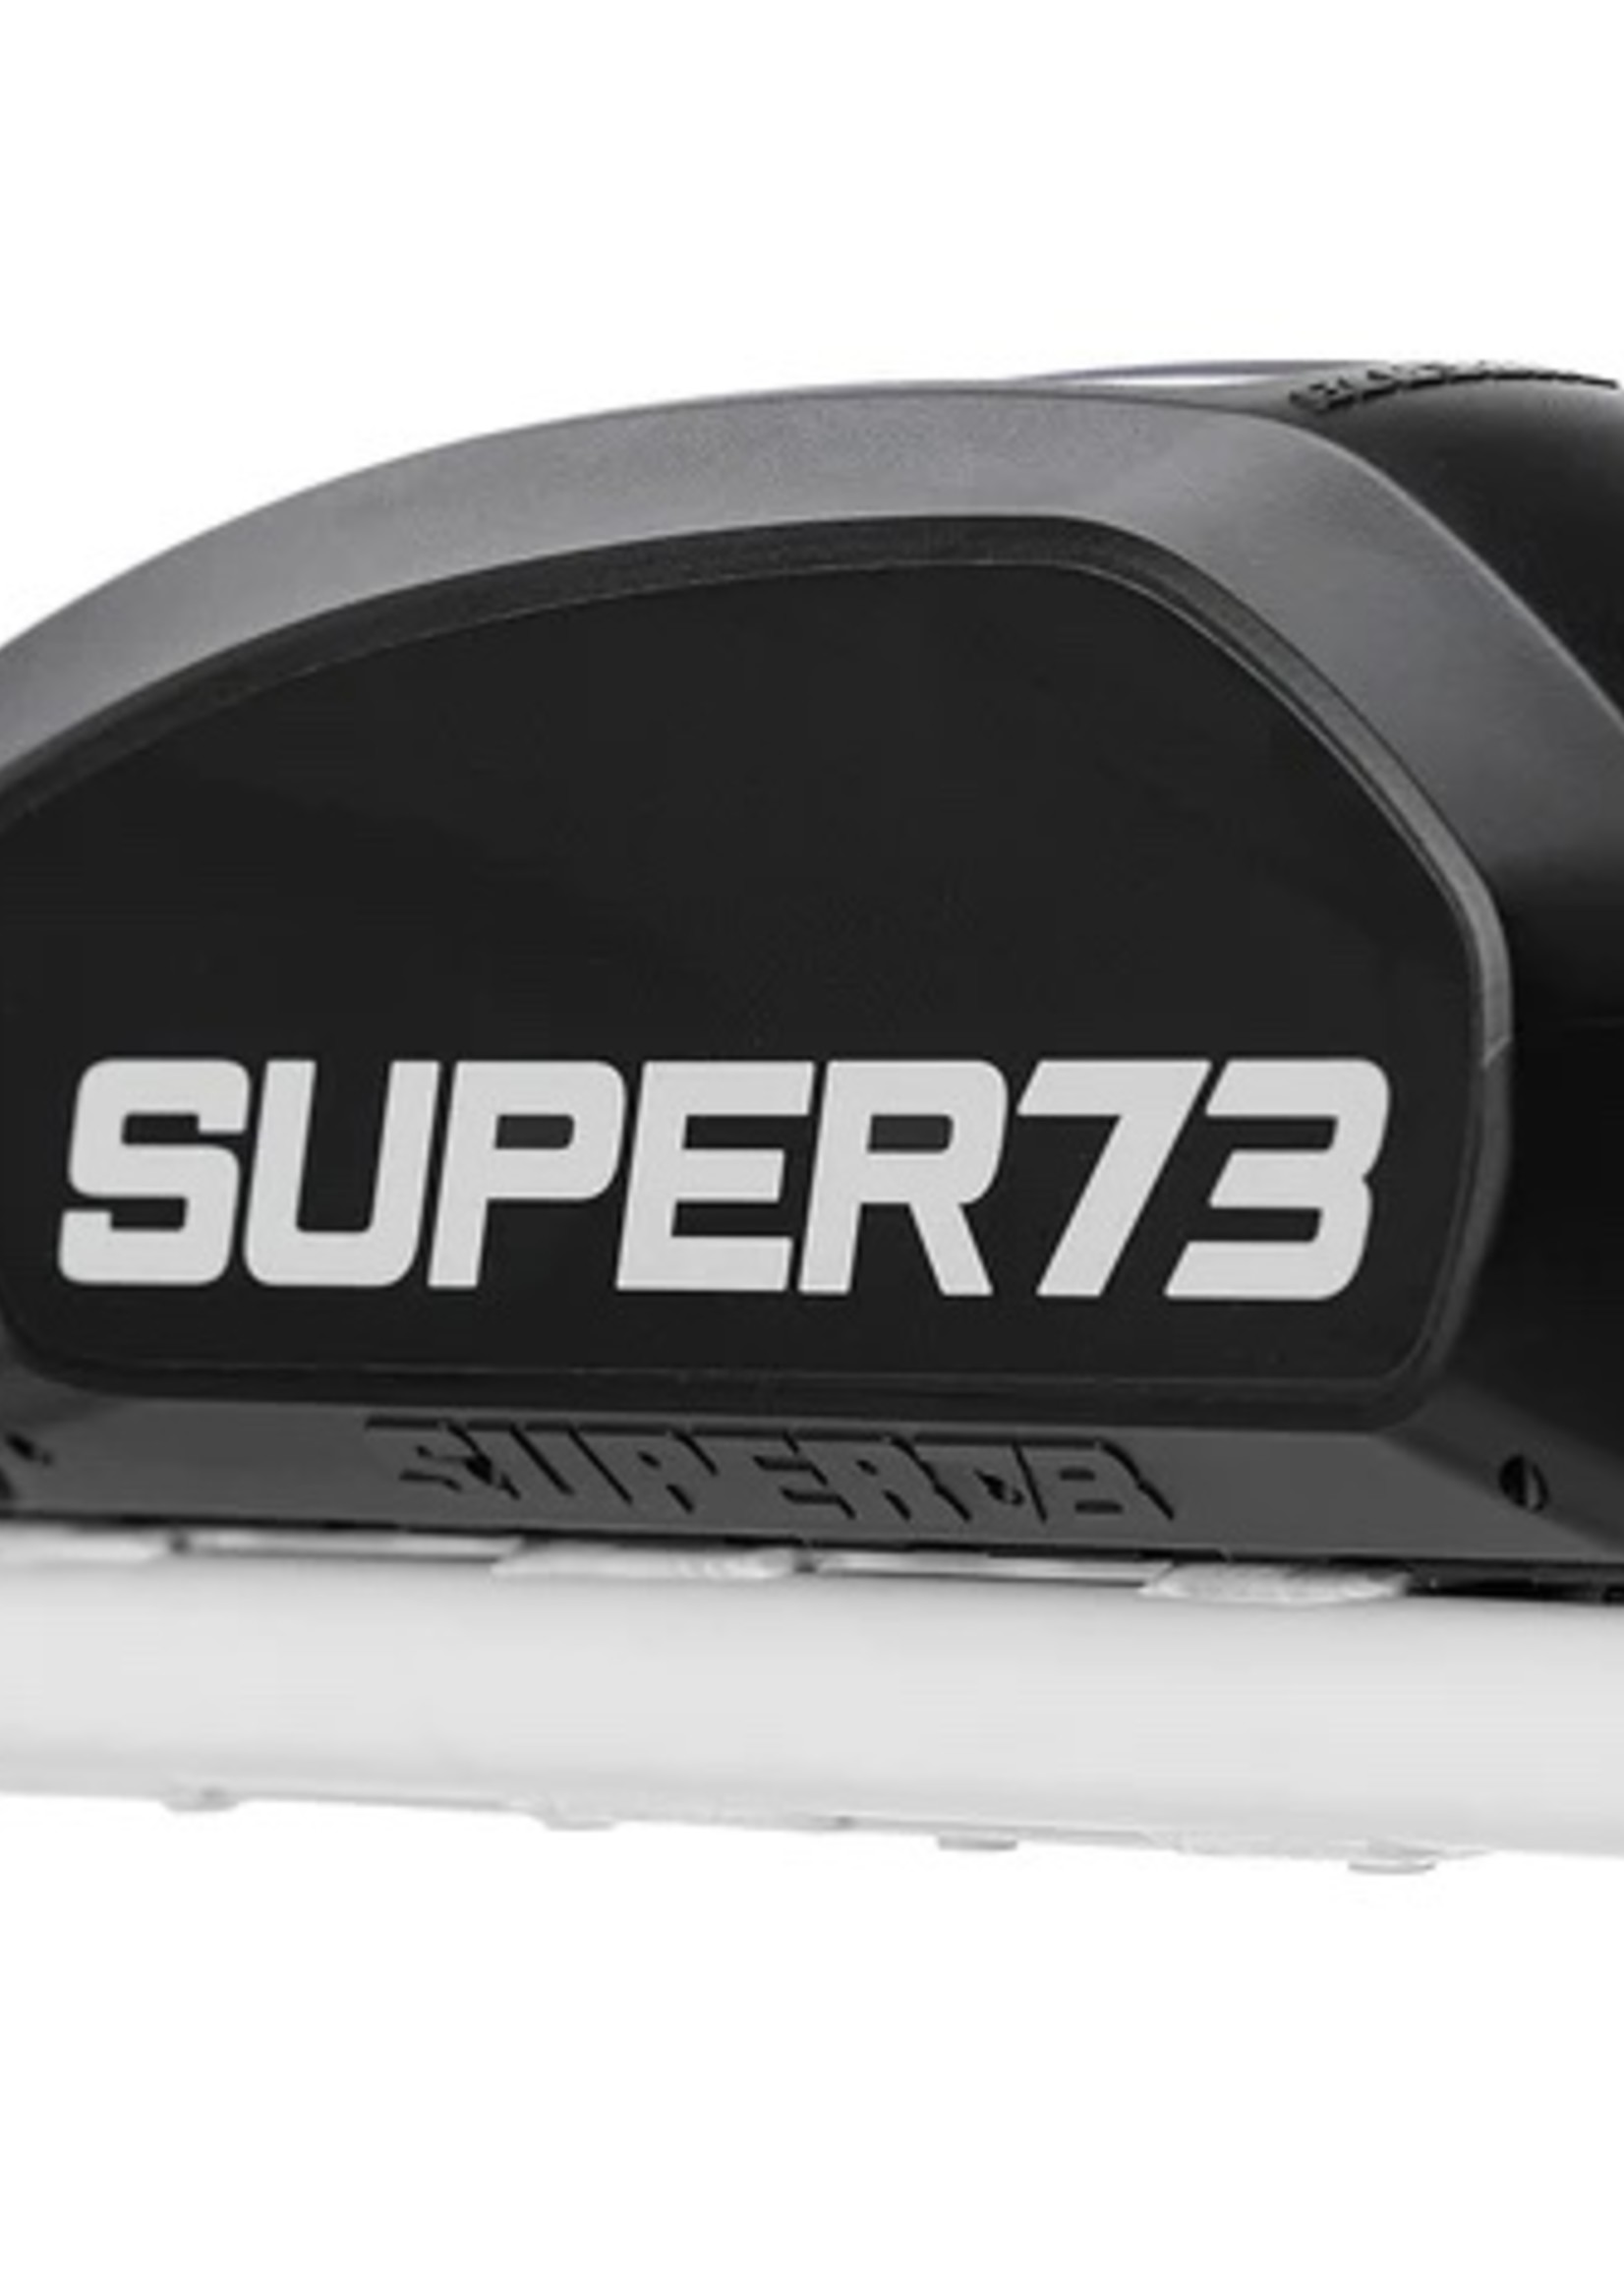 Super73 Super73-S2